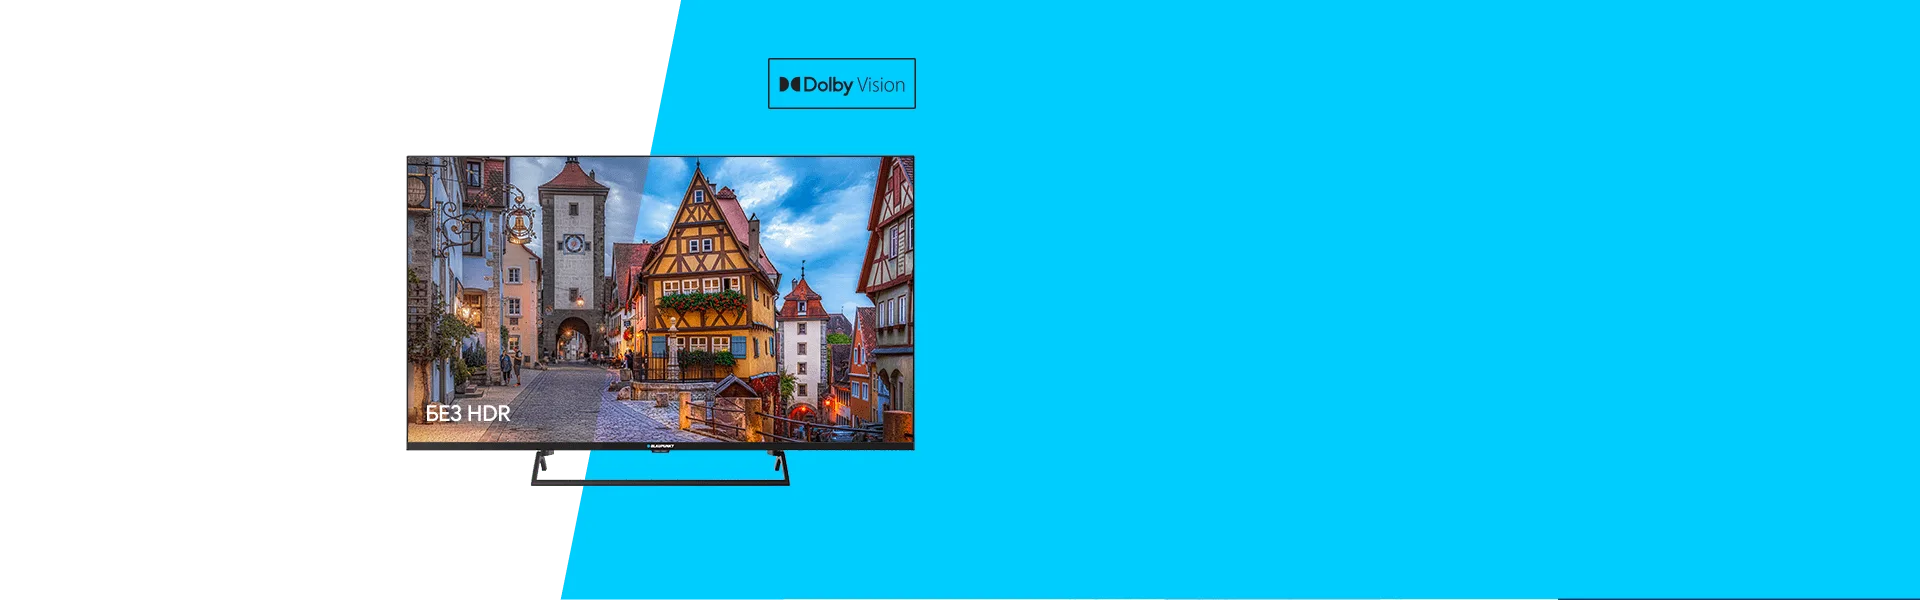 Телевизор UHD 4K Android TV Blaupunkt 43UB7000